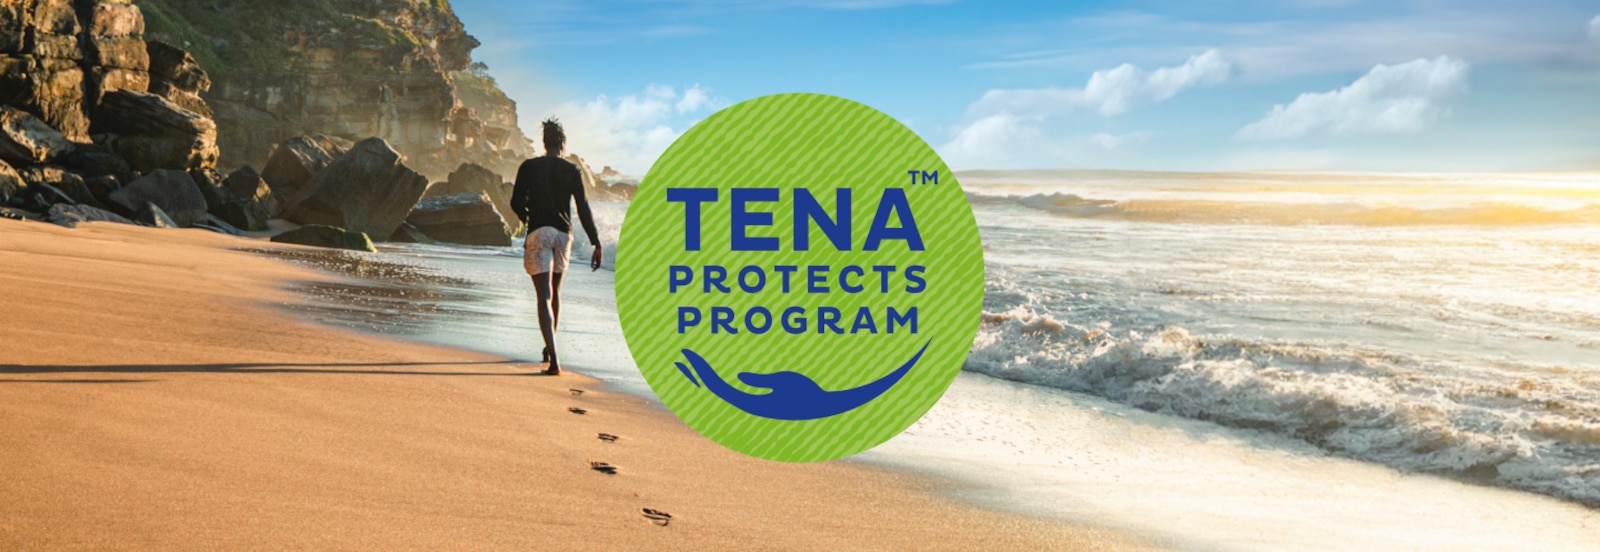 Logo Programu TENA Protects pridané na fotku muža prechádzajúceho sa po slnečnej pláži smerom k vzdialeným útesom 